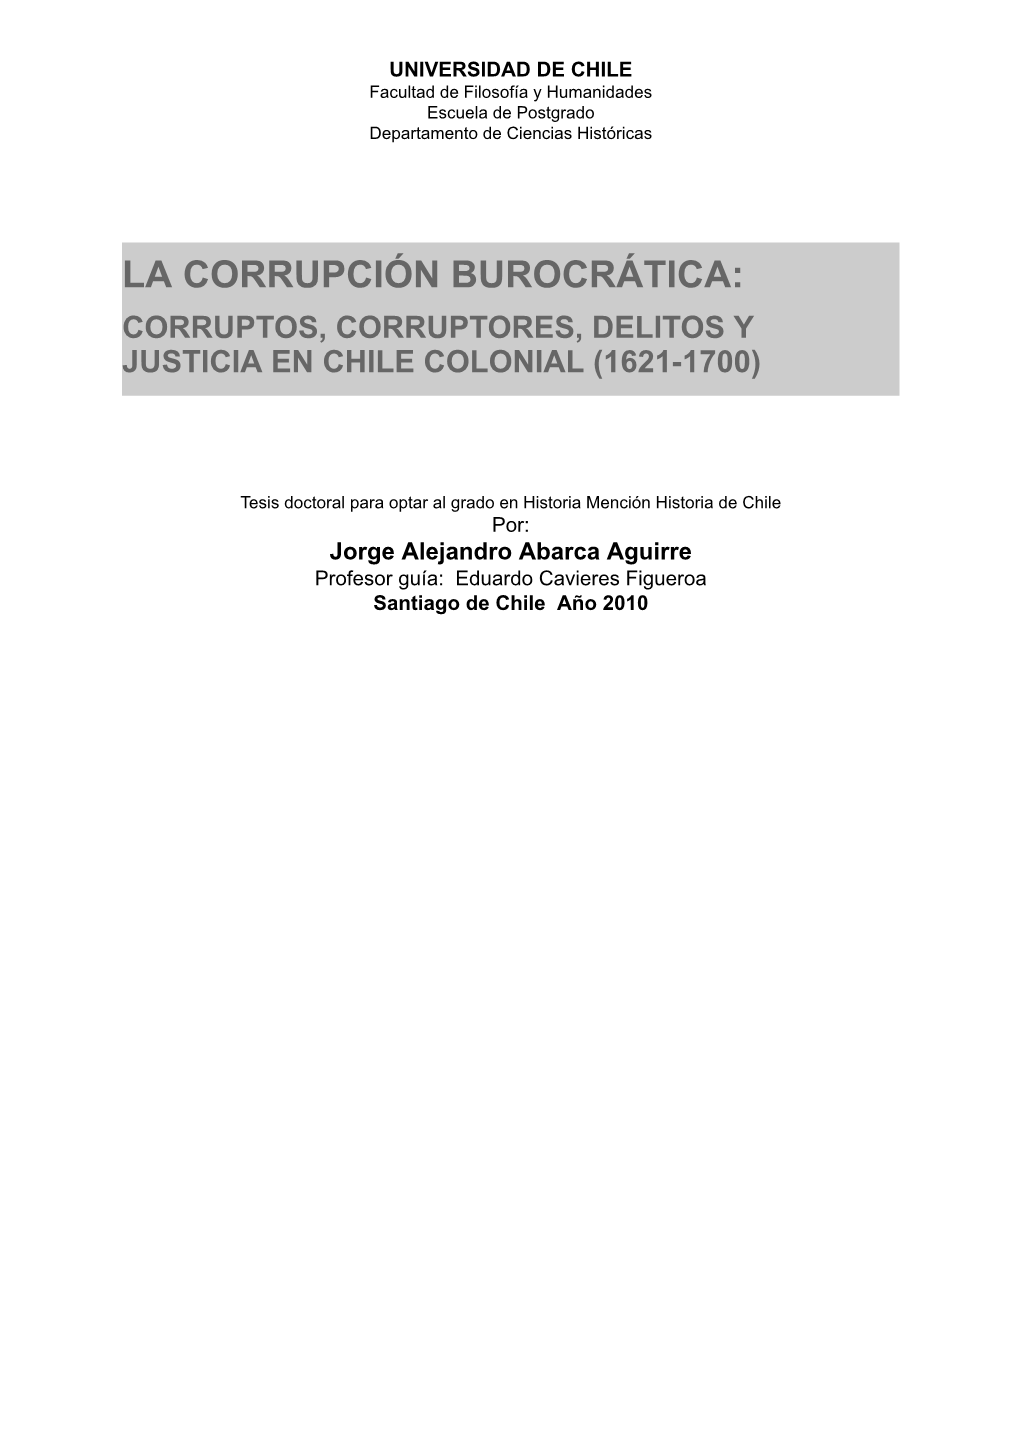 La Corrupción Burocrática: Corruptos, Corruptores, Delitos Y Justicia En Chile Colonial (1621-1700)